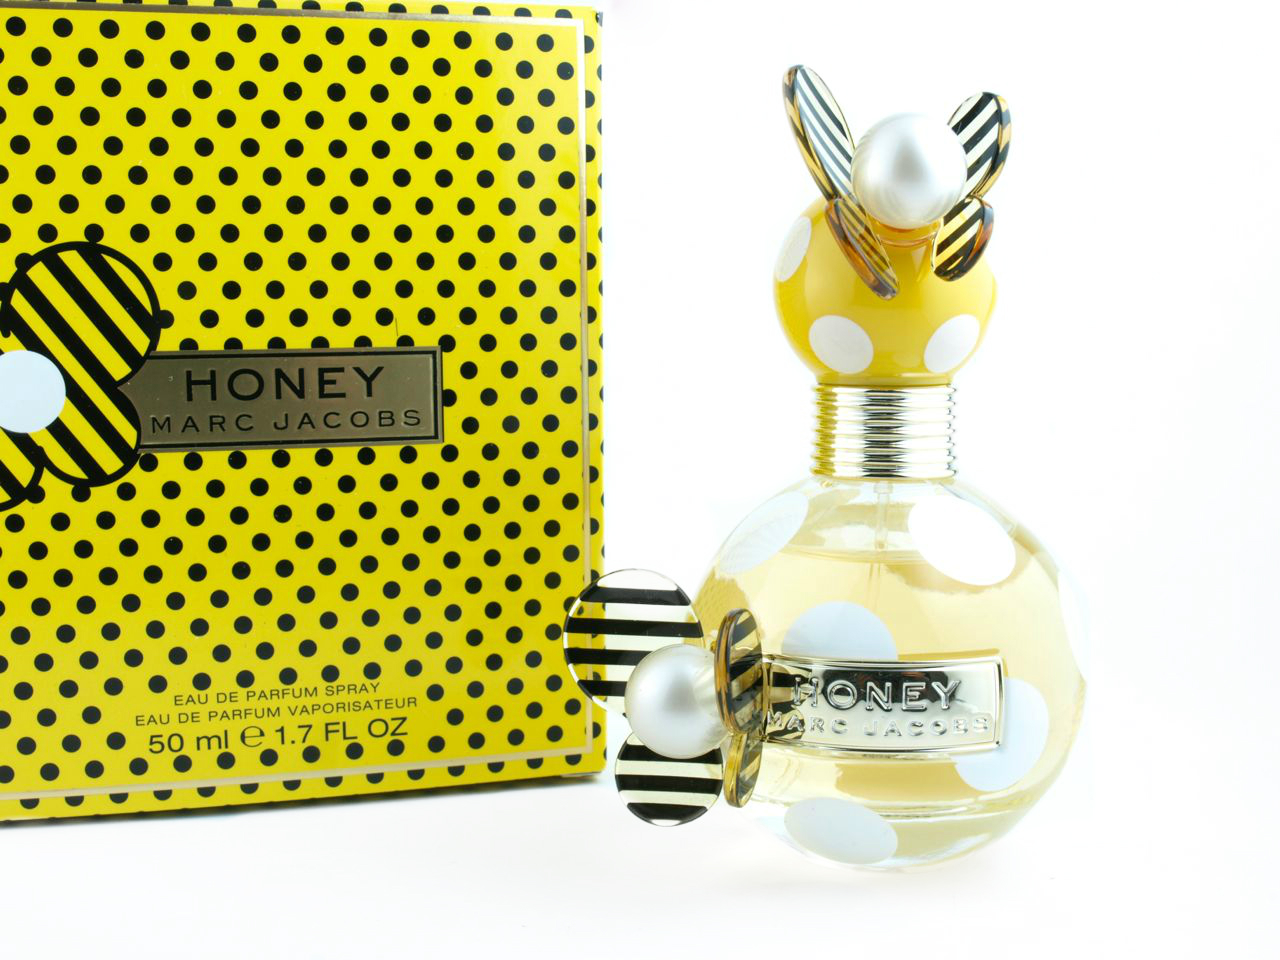 Marc Jacobs Honey Eau de Parfum: Review